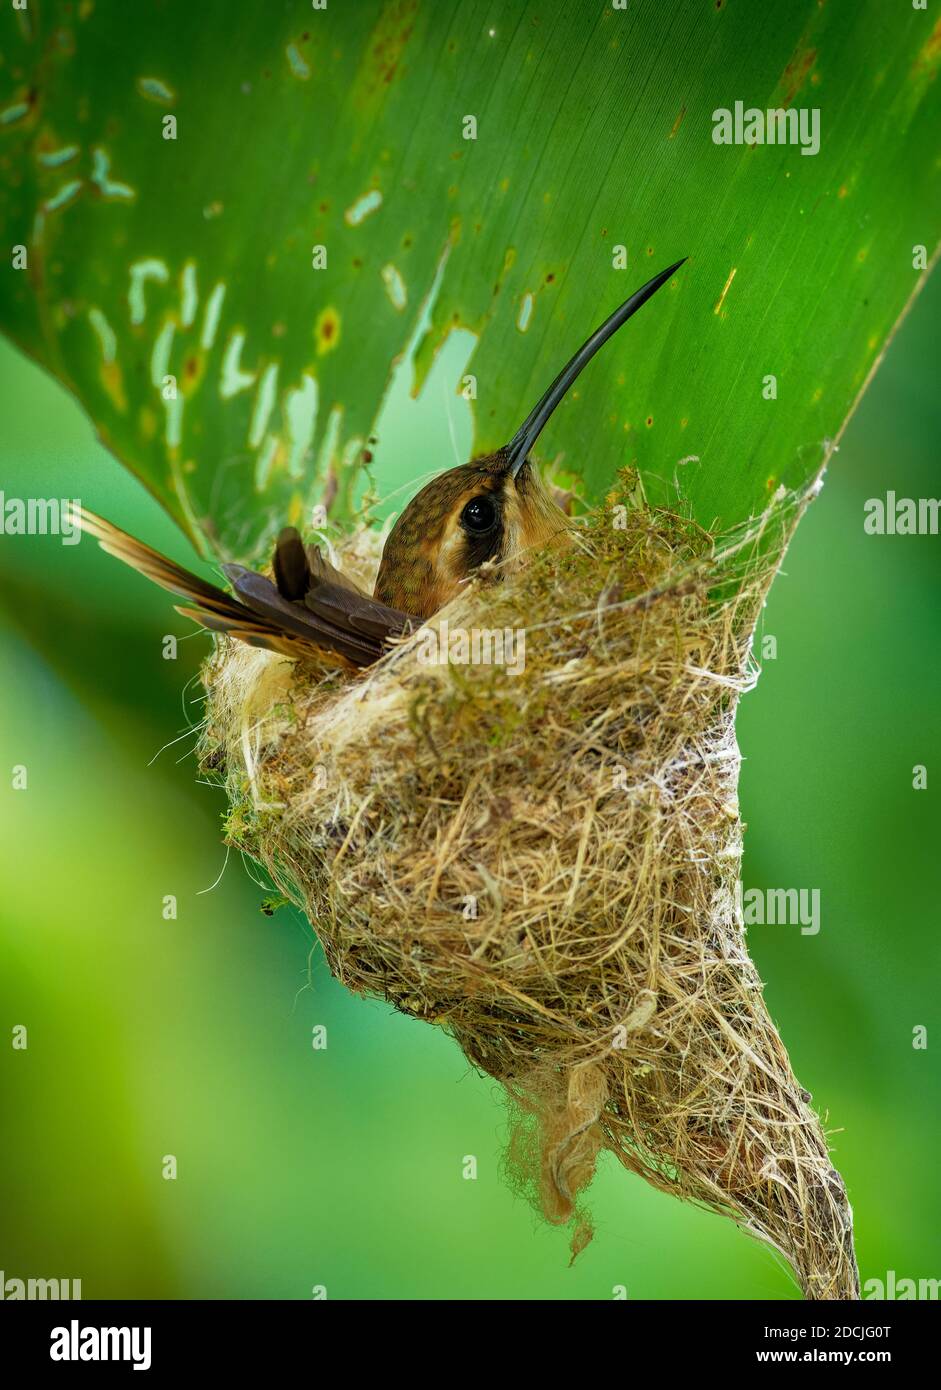 Streifenkehleinsiedler (Phaethornis striigularis) Arten von Kolibri aus Mittel- und Südamerika, ziemlich häufig kleine Vögel nisten in t Stockfoto